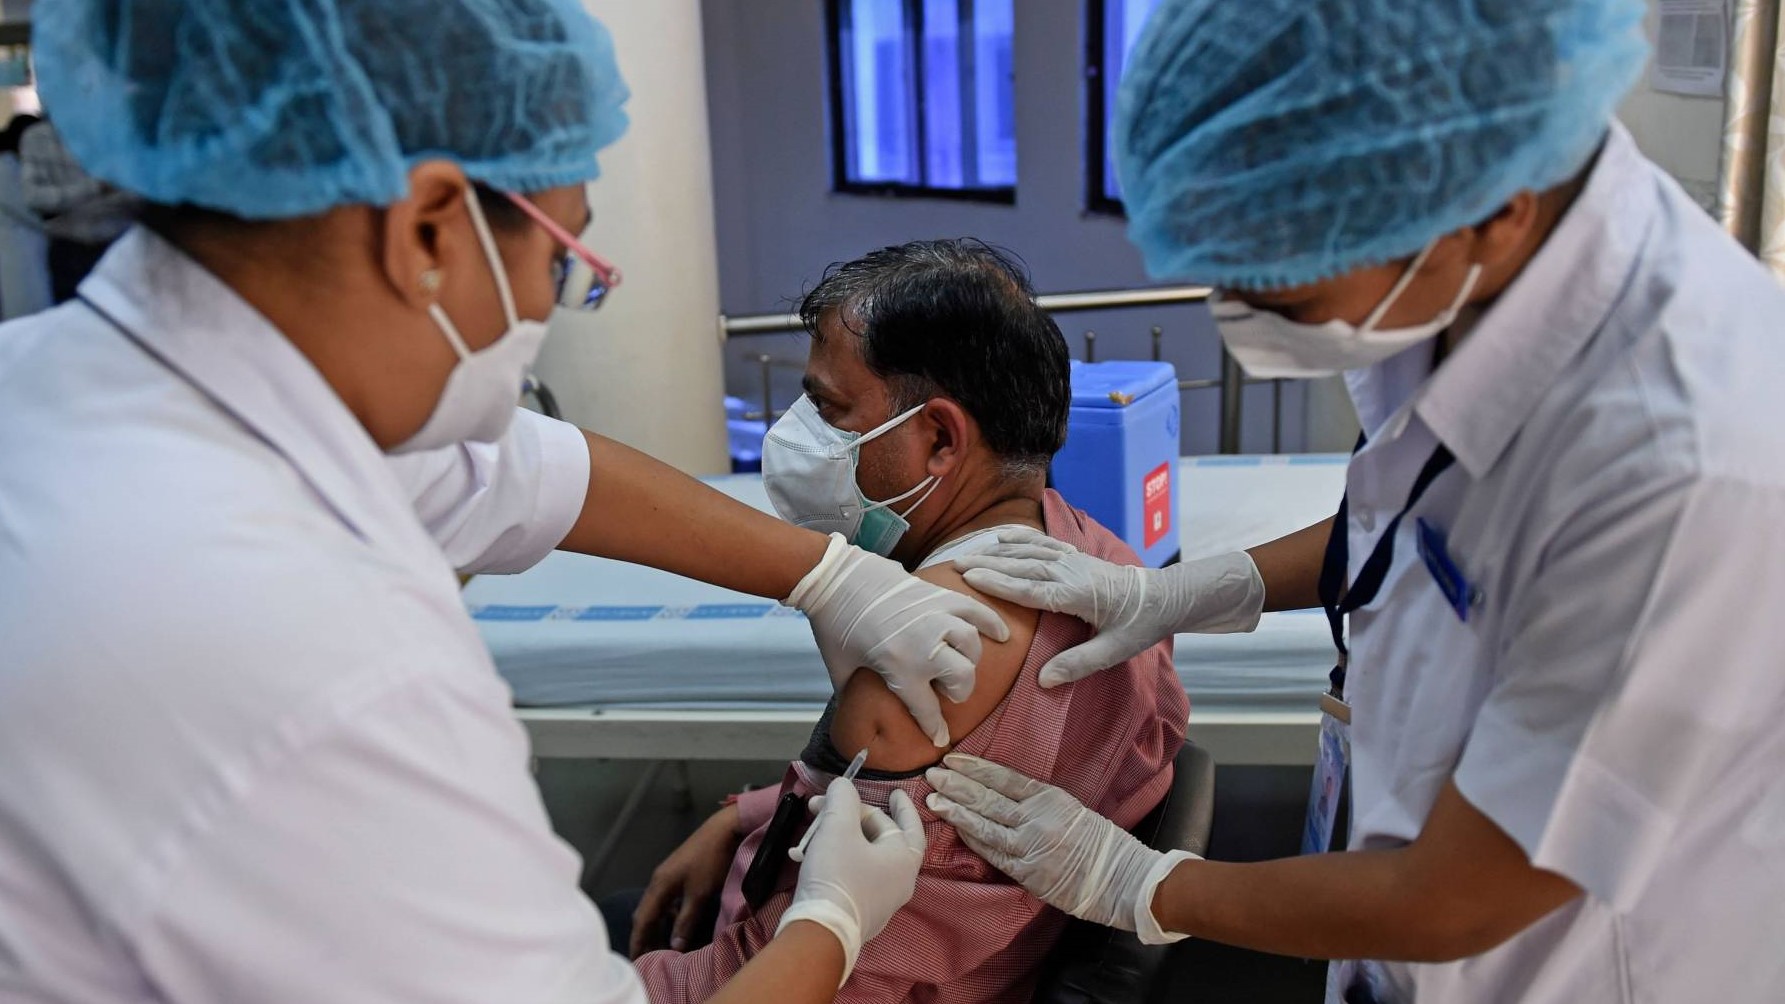 هندي يتلقى جرعة من اللقاح المحلي ضد كورونا في أحد مراكز التلقيح الهندية